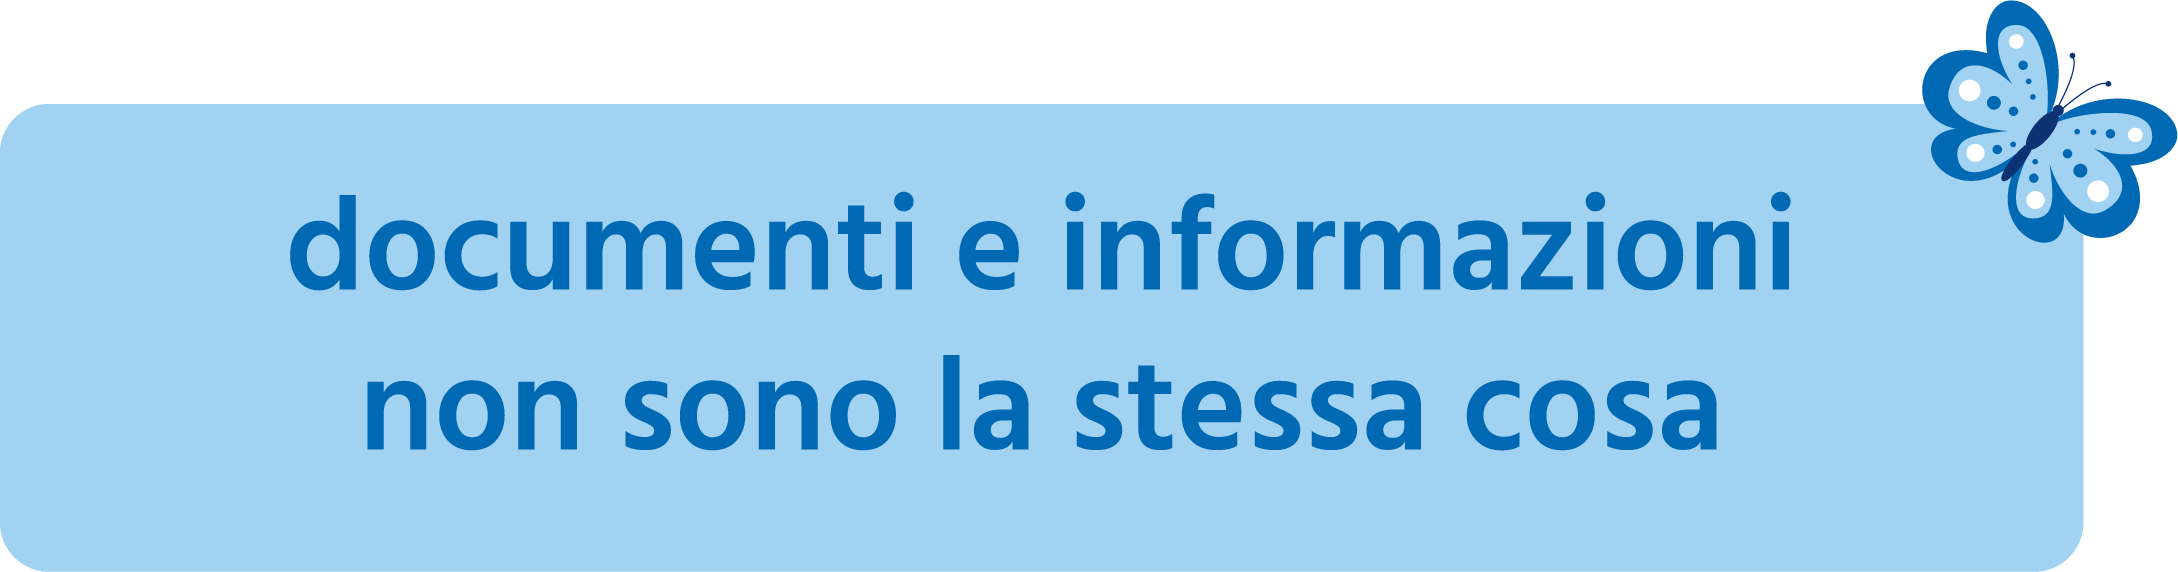 Organizzare casa - documenti e informazioni non sono la stessa cosa Serena Mattia Professional Organizer, home organizer, personal organizer a Lugano, Ticino, Svizzera e Italia